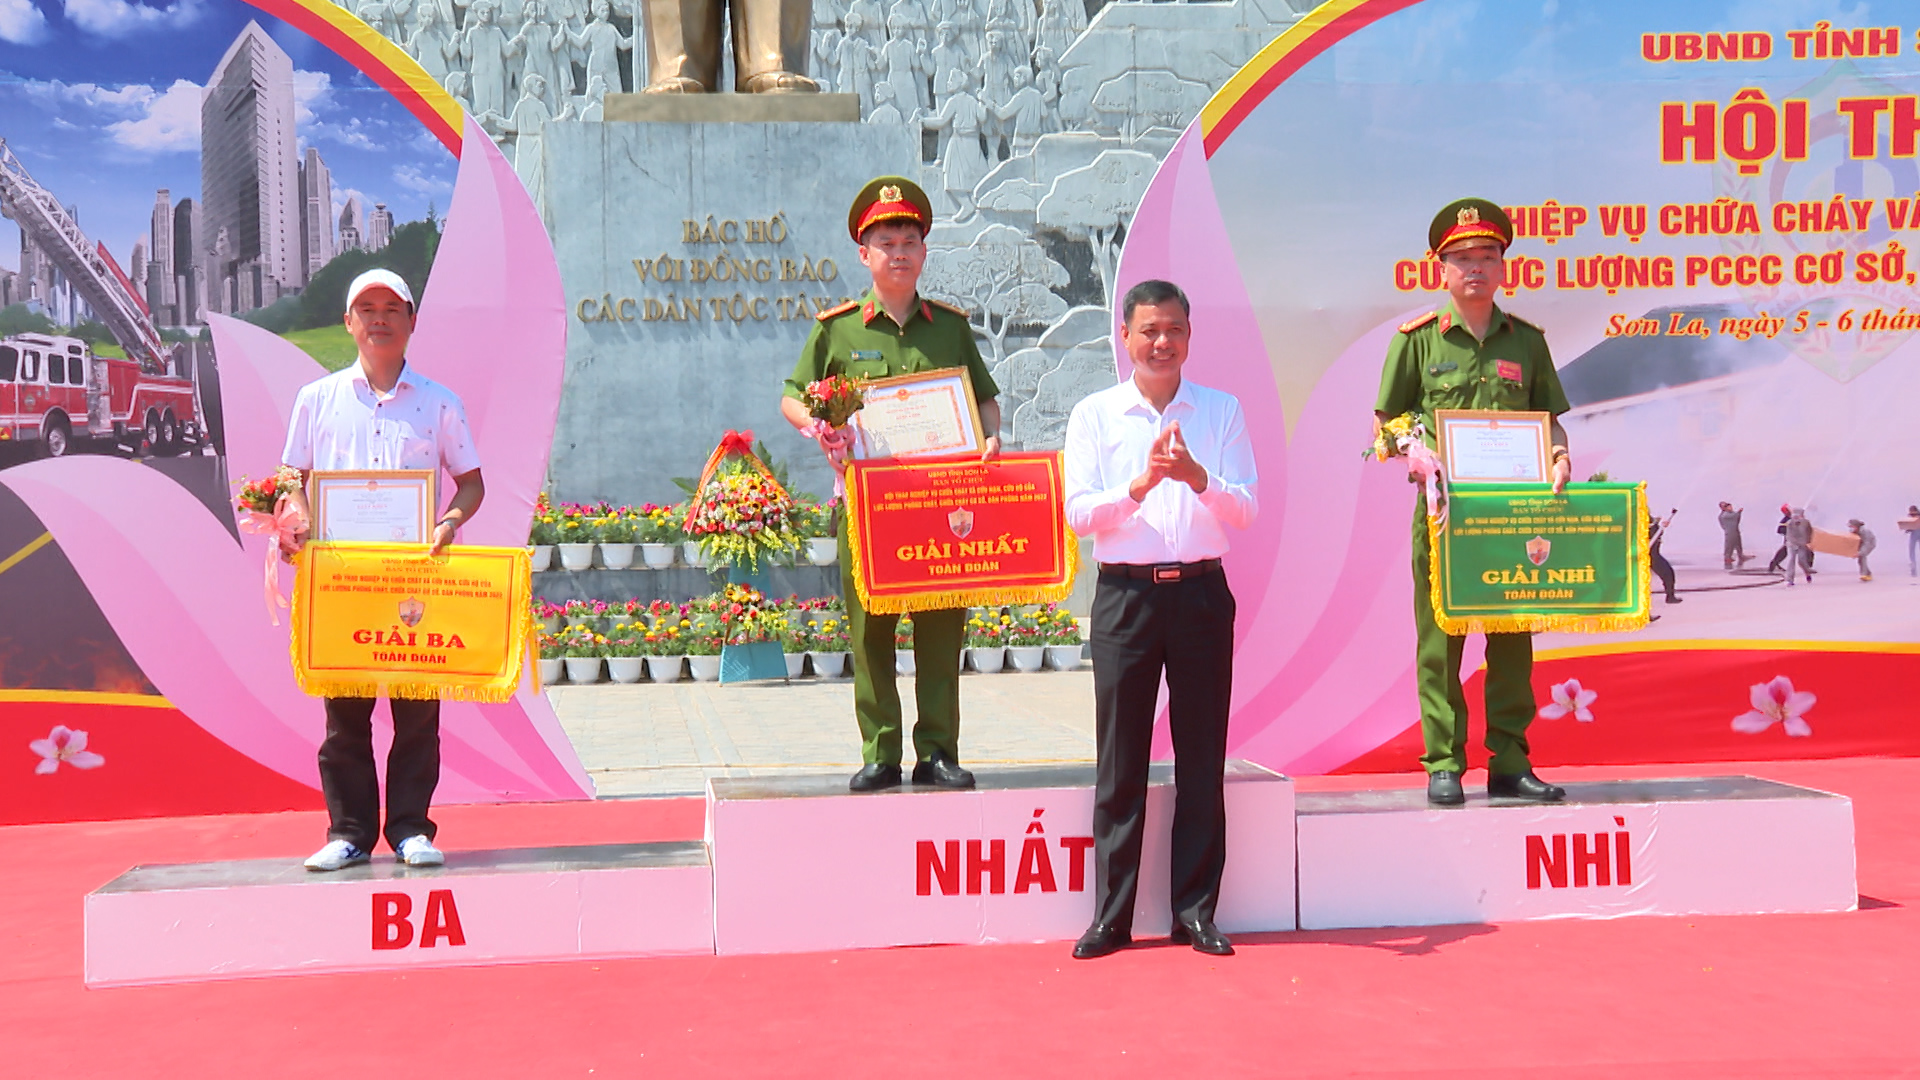 Hội thao nghiệp vụ chữa cháy và CNCH tỉnh Sơn La năm 2022 - Ảnh 5.